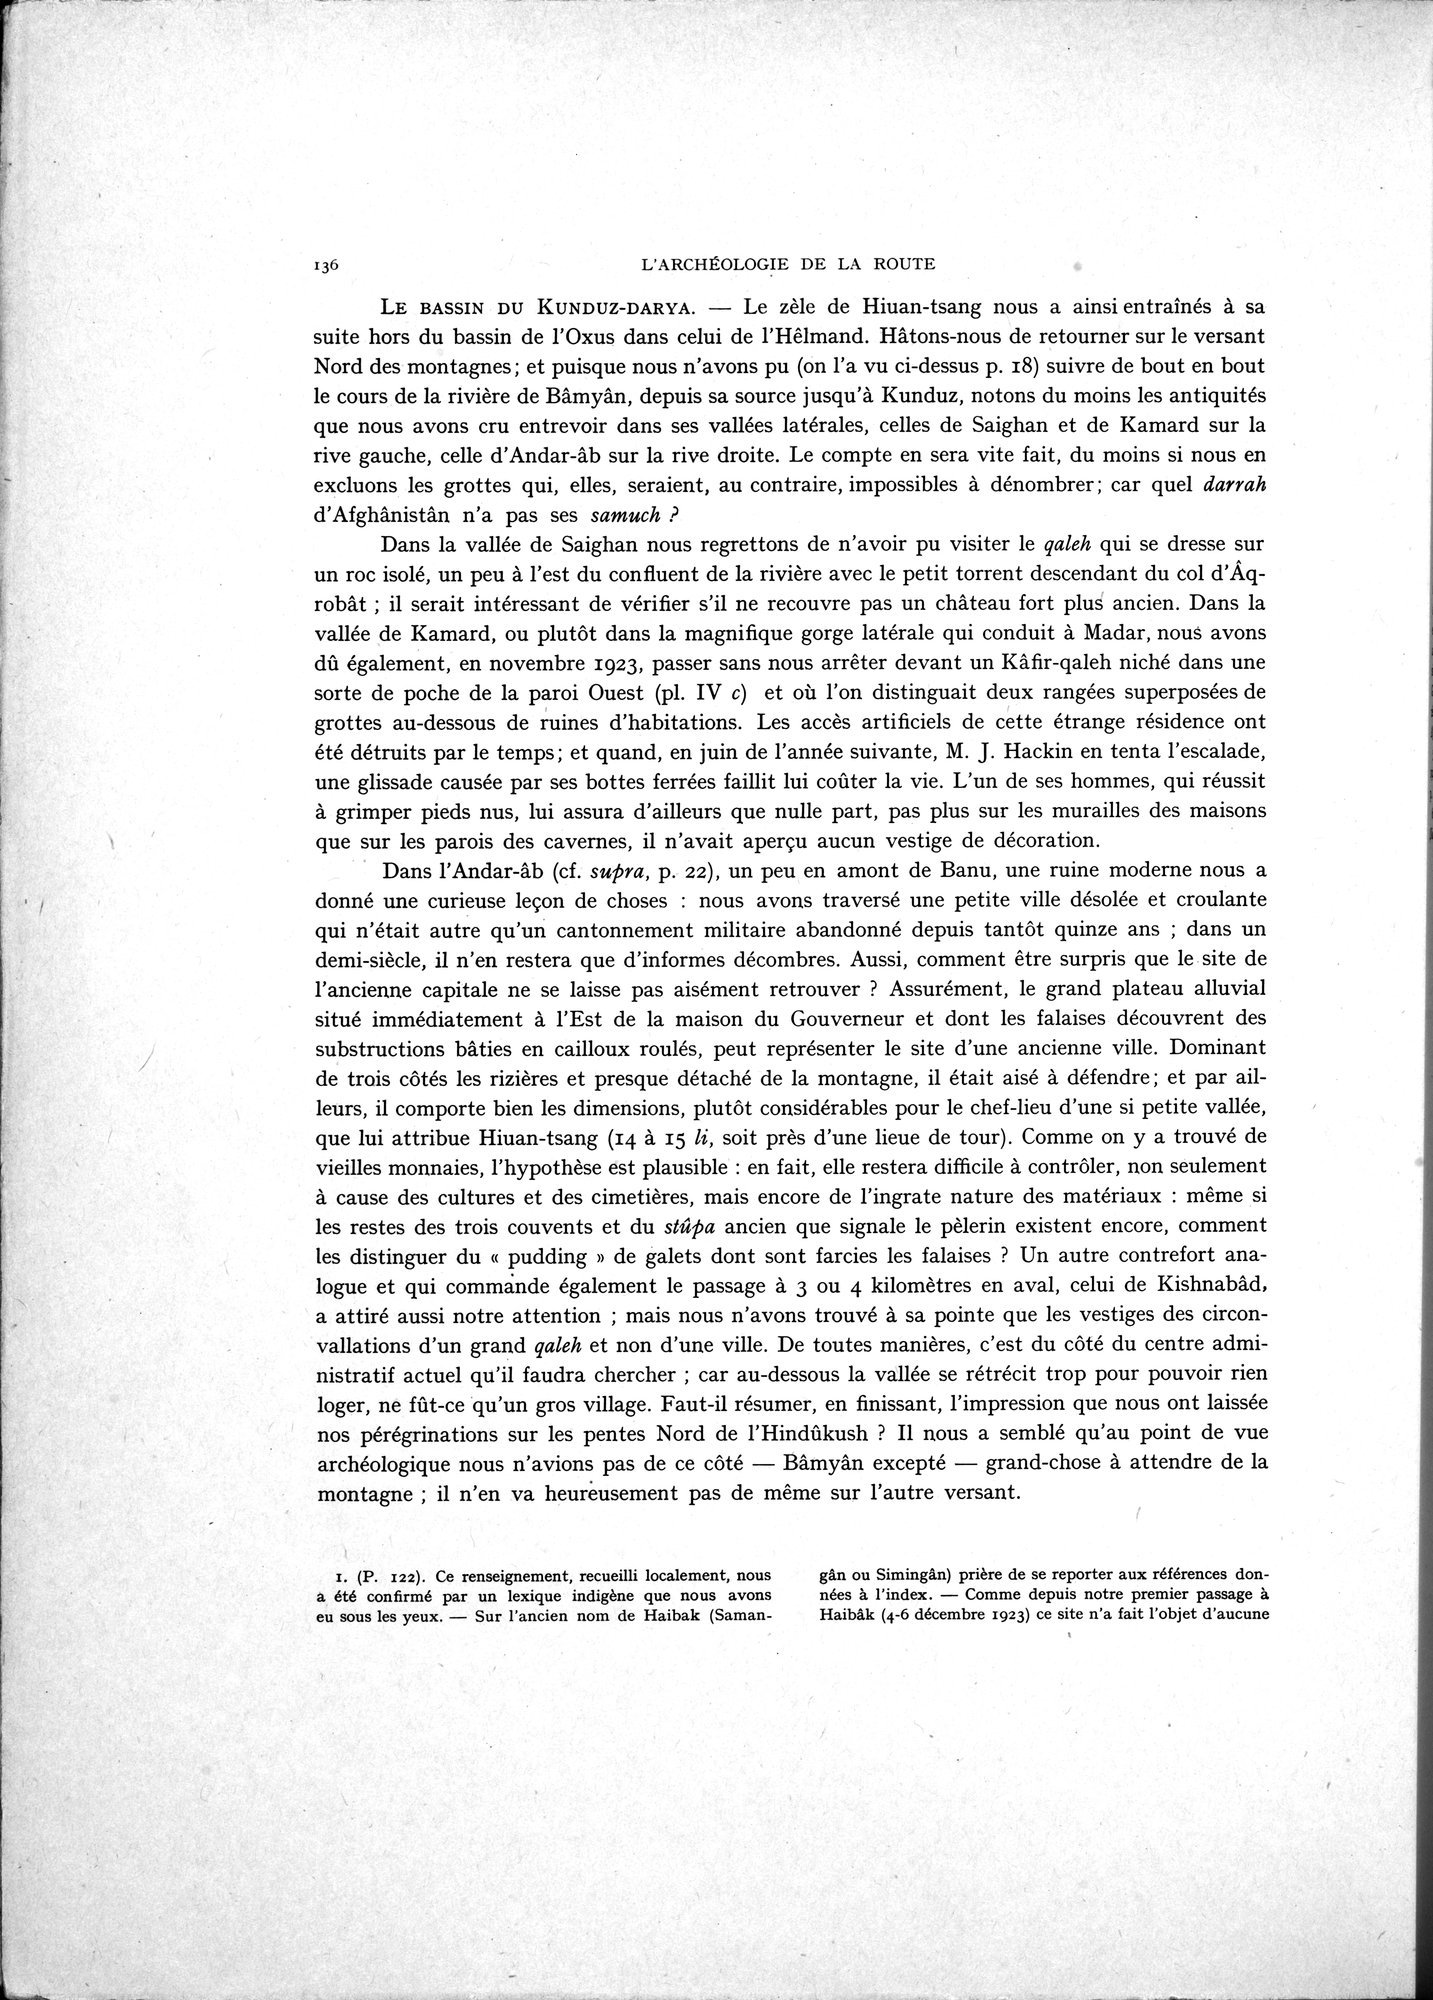 La Vieille Route de l'Inde de Bactres à Taxila : vol.1 / Page 146 (Grayscale High Resolution Image)